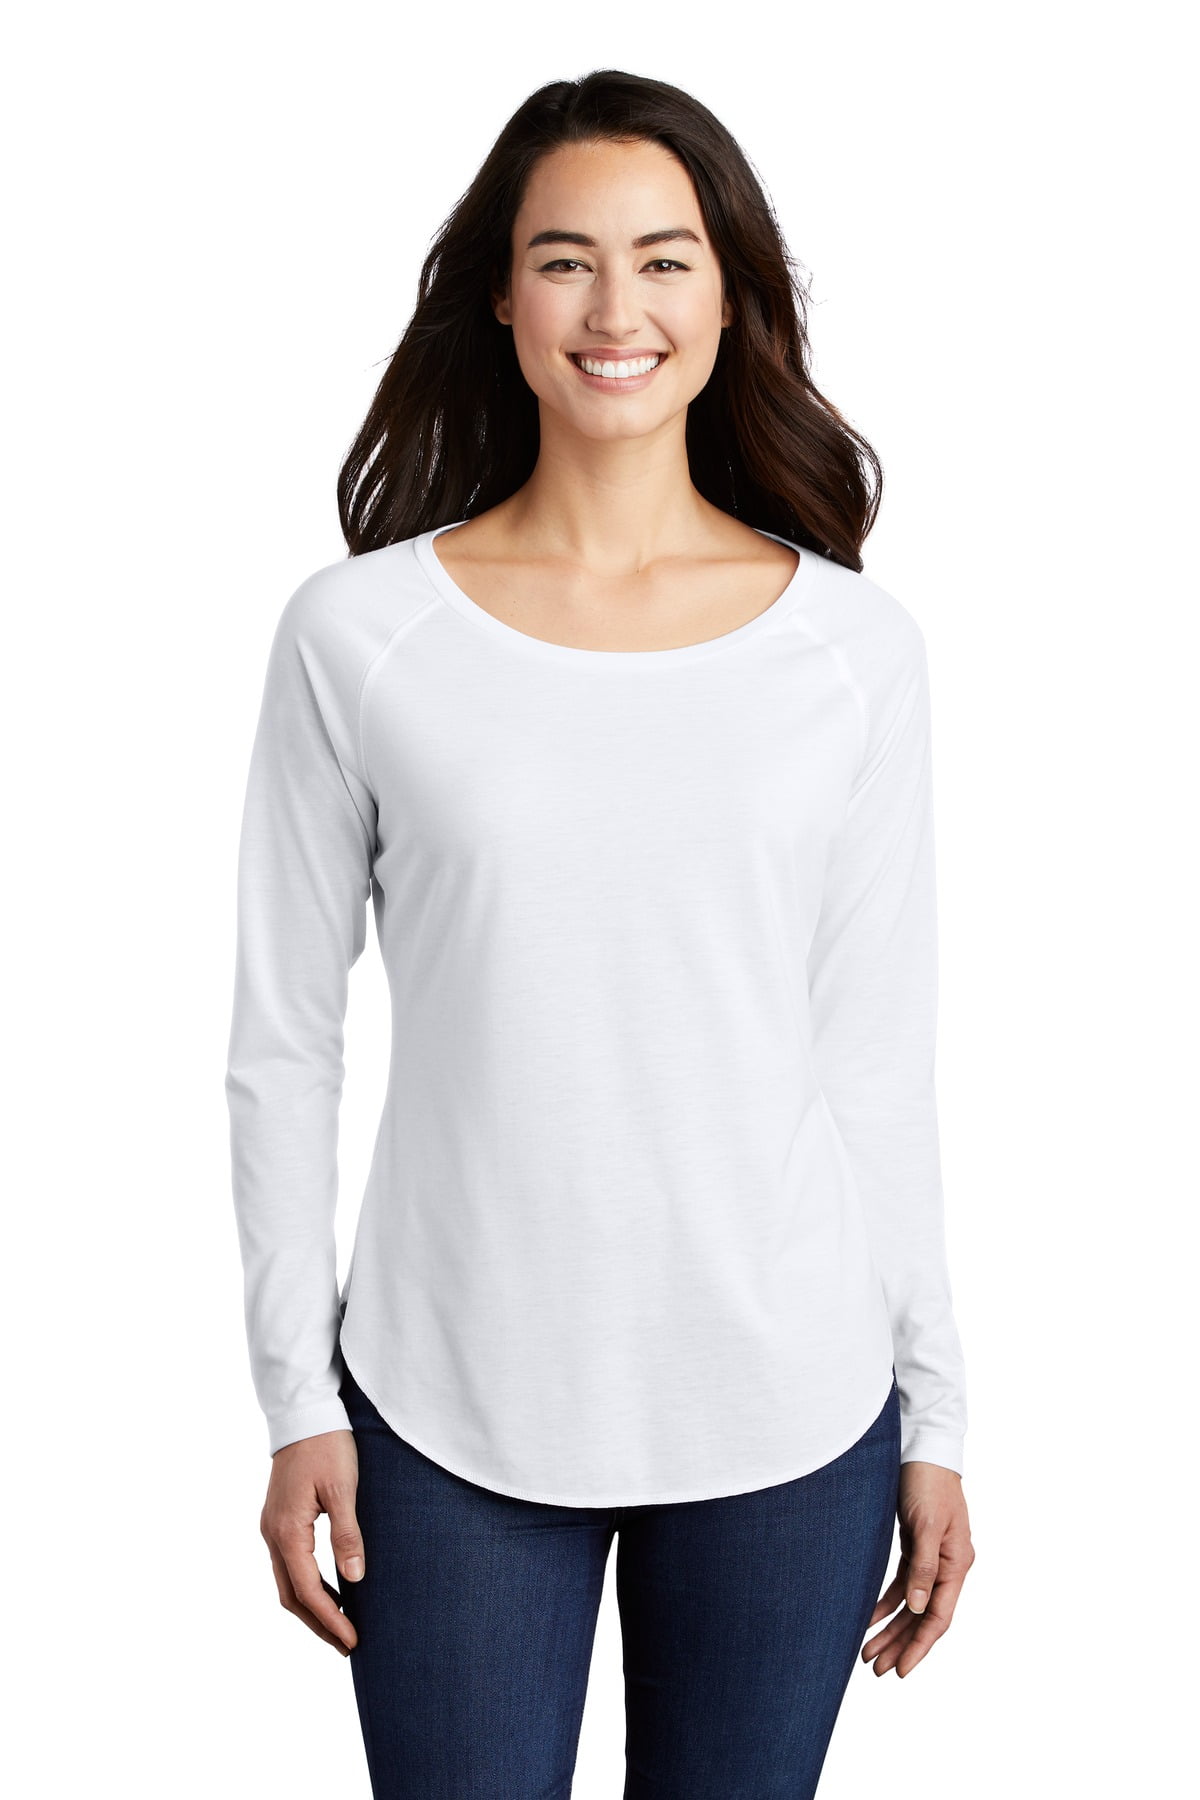 Sport Tek Adult Female Women Plain Long Sleeves T-Shirt White Triad So ...